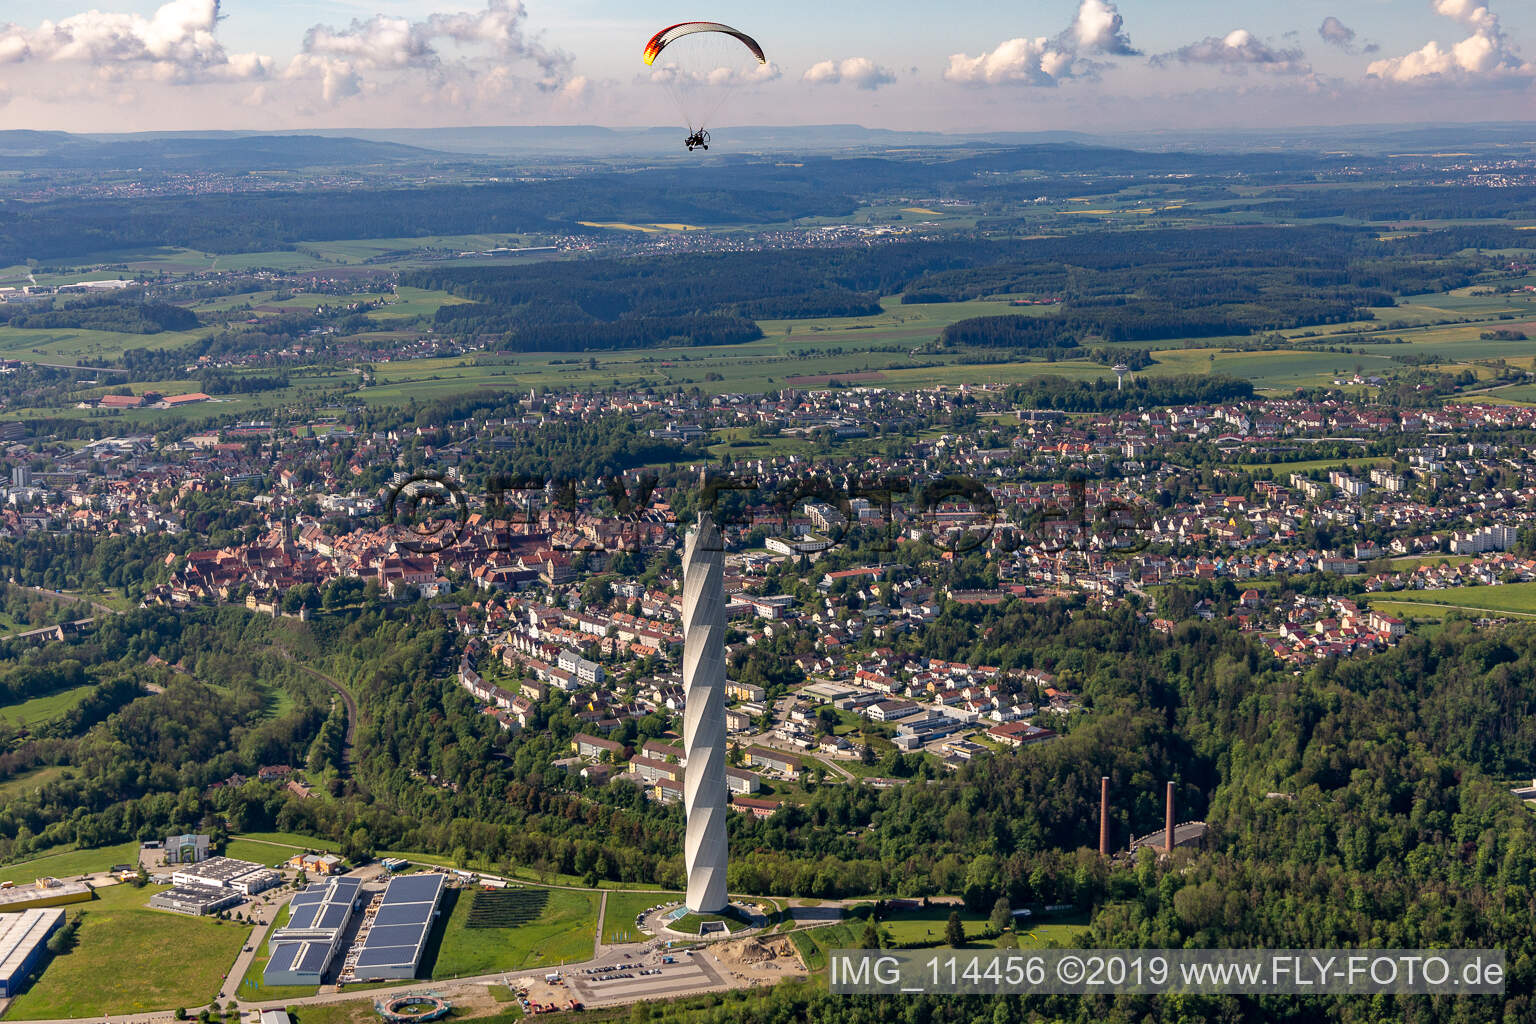 Luftbild von Turm thyssenkrupp Testturm für Expressaufzüge am Berner Feld in Rottweil. Das neue Wahrzeichen der Kleinstadt Rottweil ist derzeit höchstes Bauwerk in Baden-Württemberg, Deutschland